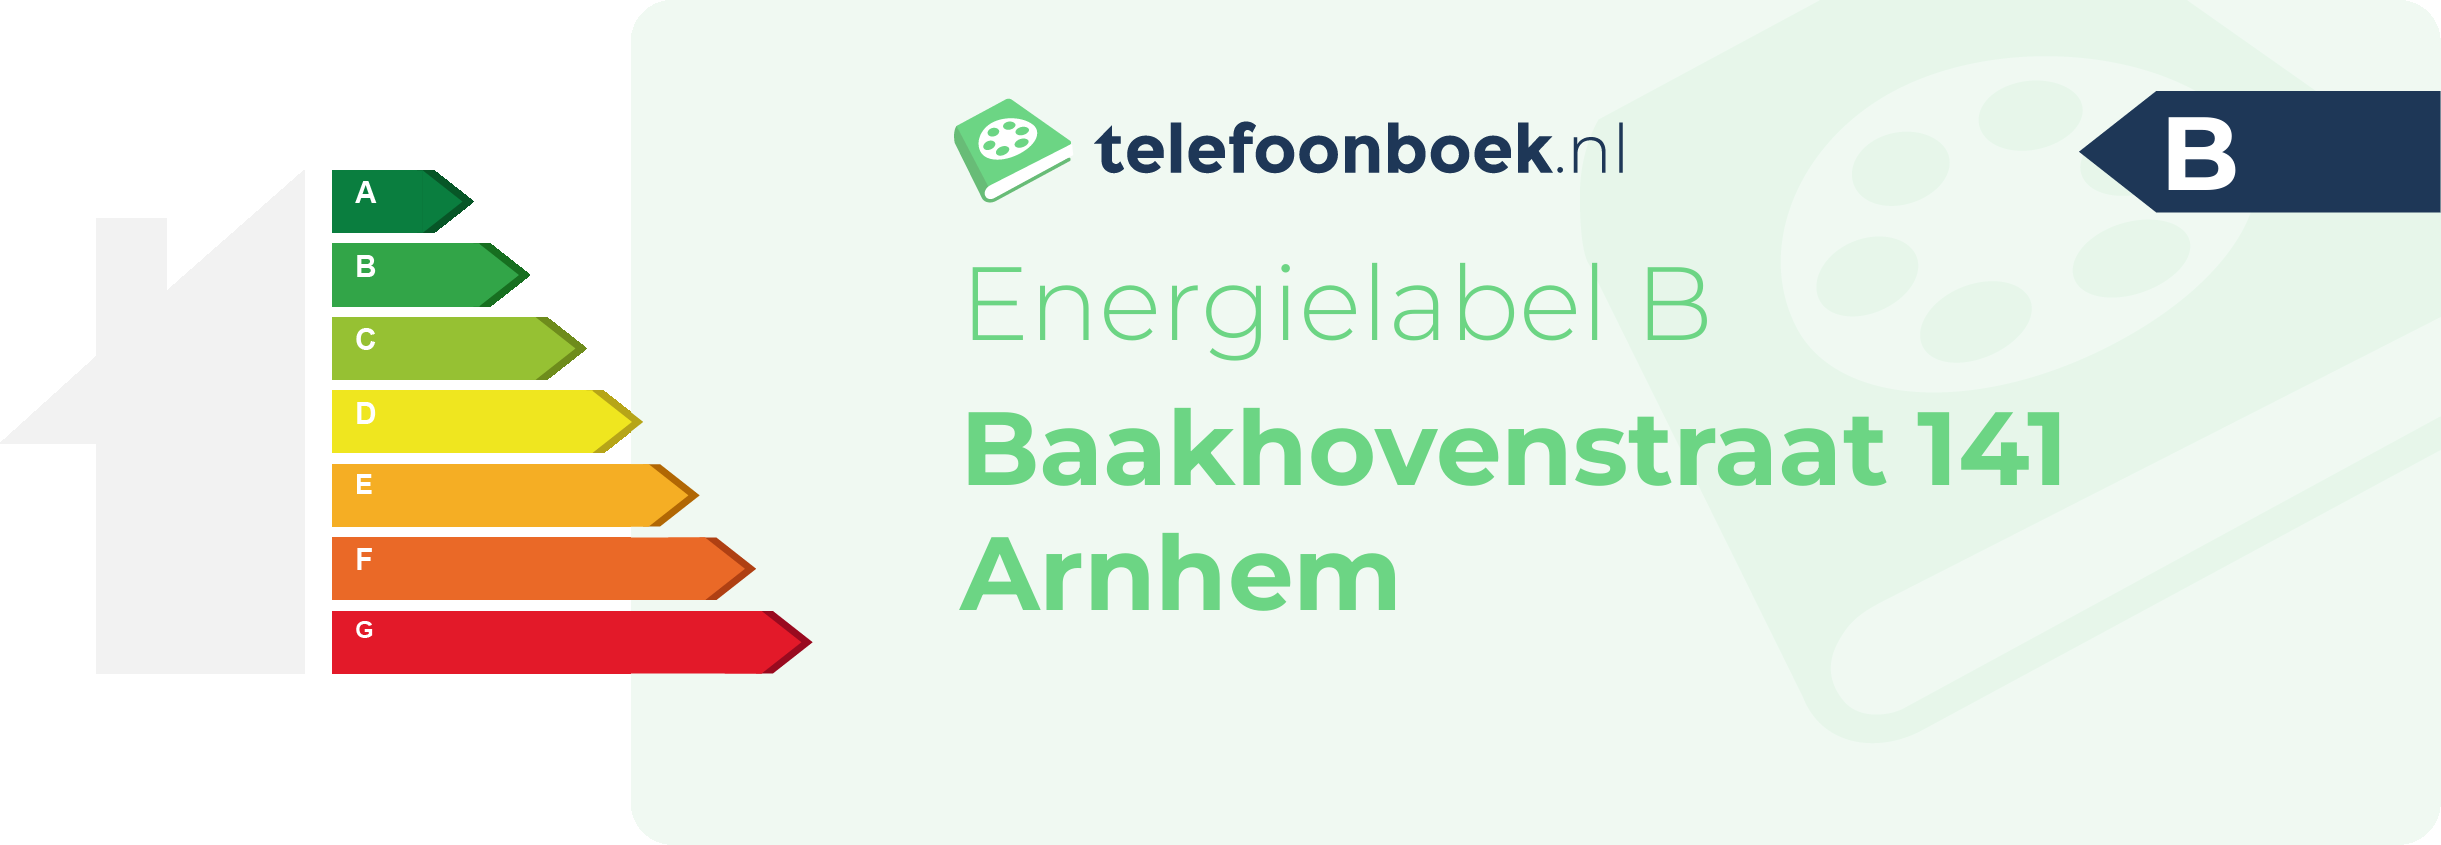 Energielabel Baakhovenstraat 141 Arnhem